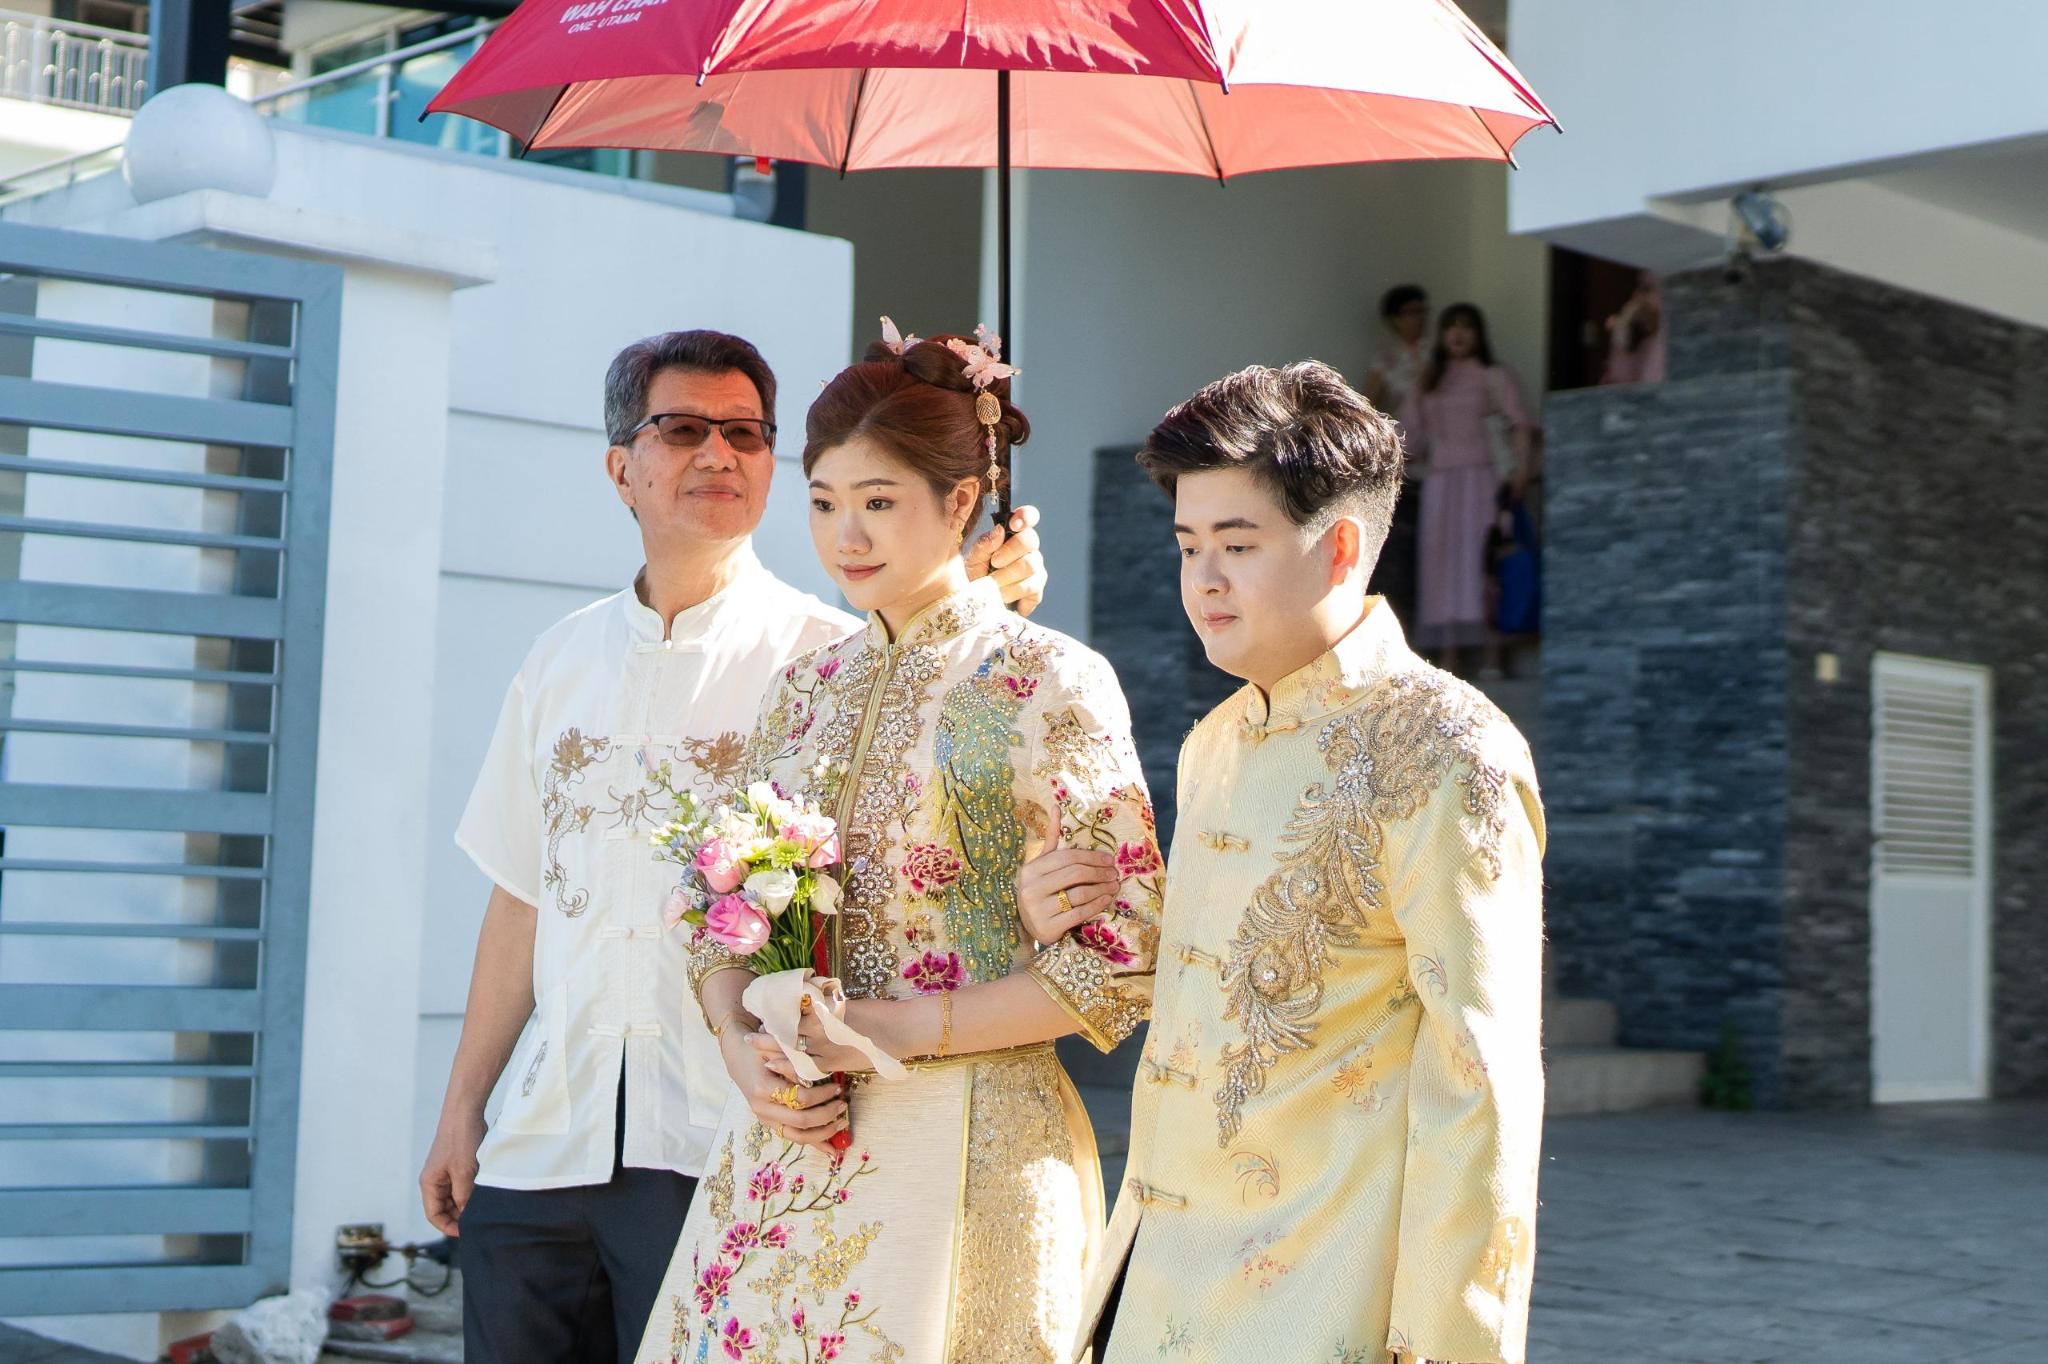 De jongste zus van Li Li Chong wandelt tijdens de bruiloft over straat met haar (aanstaande) echtgenoot.